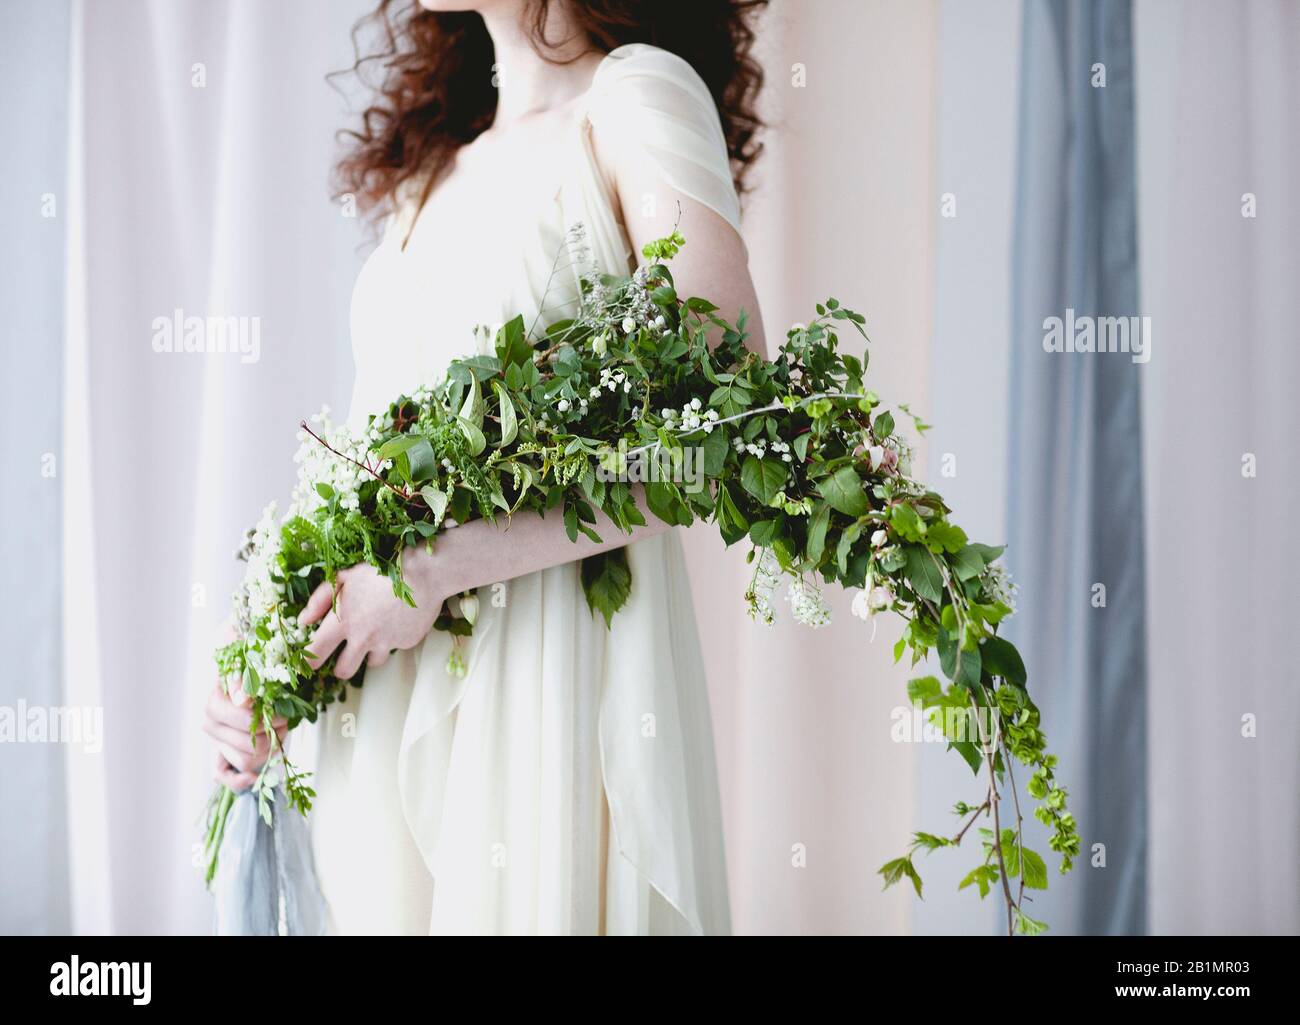 Chabillez une femme pieds nus dans une élégante robe de mariage blanche  avec un grand bouquet de petites fleurs blanches et un feuillage vert se  tenant dans une couleur pastel transparente c